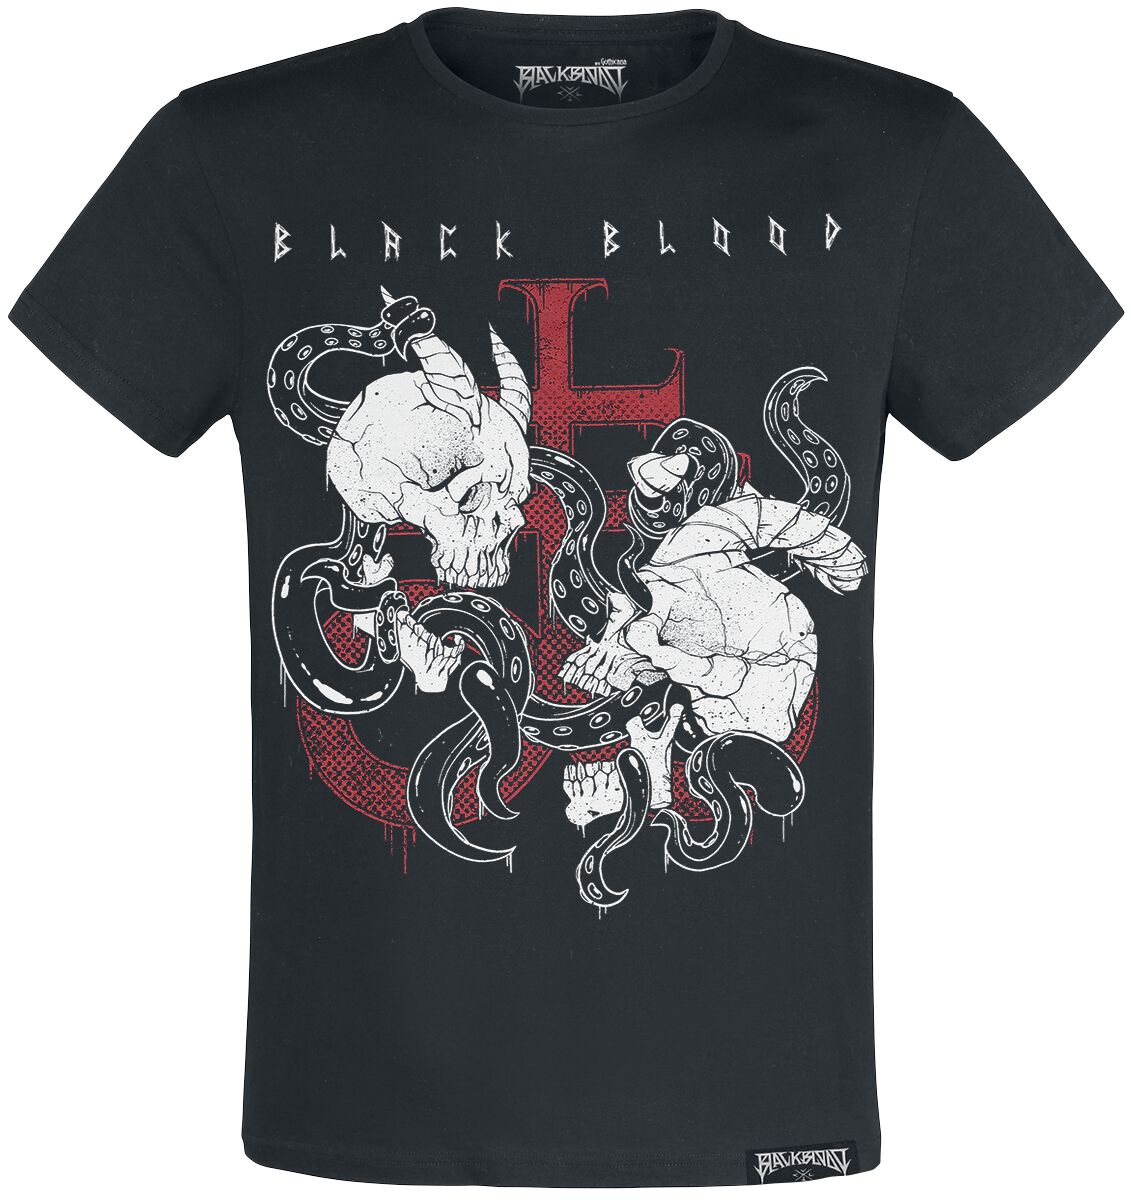 Black Blood by Gothicana T-Shirt - T-Shirt with Demon Skull Print - S bis XL - für Männer - Größe S - schwarz